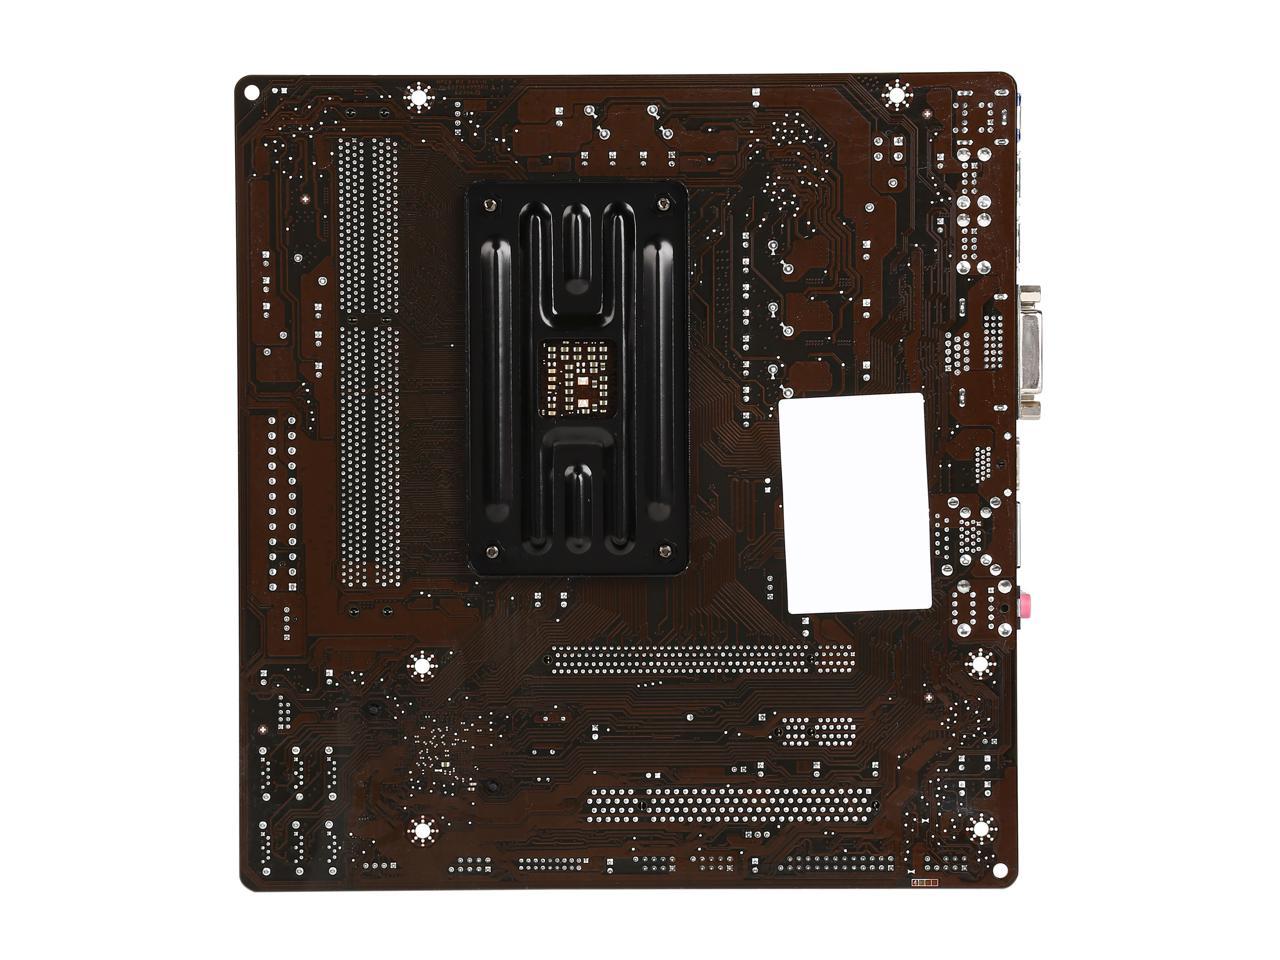 MSI A78M-E35 V2 FM2+ Micro ATX AMD Motherboard - Newegg.com